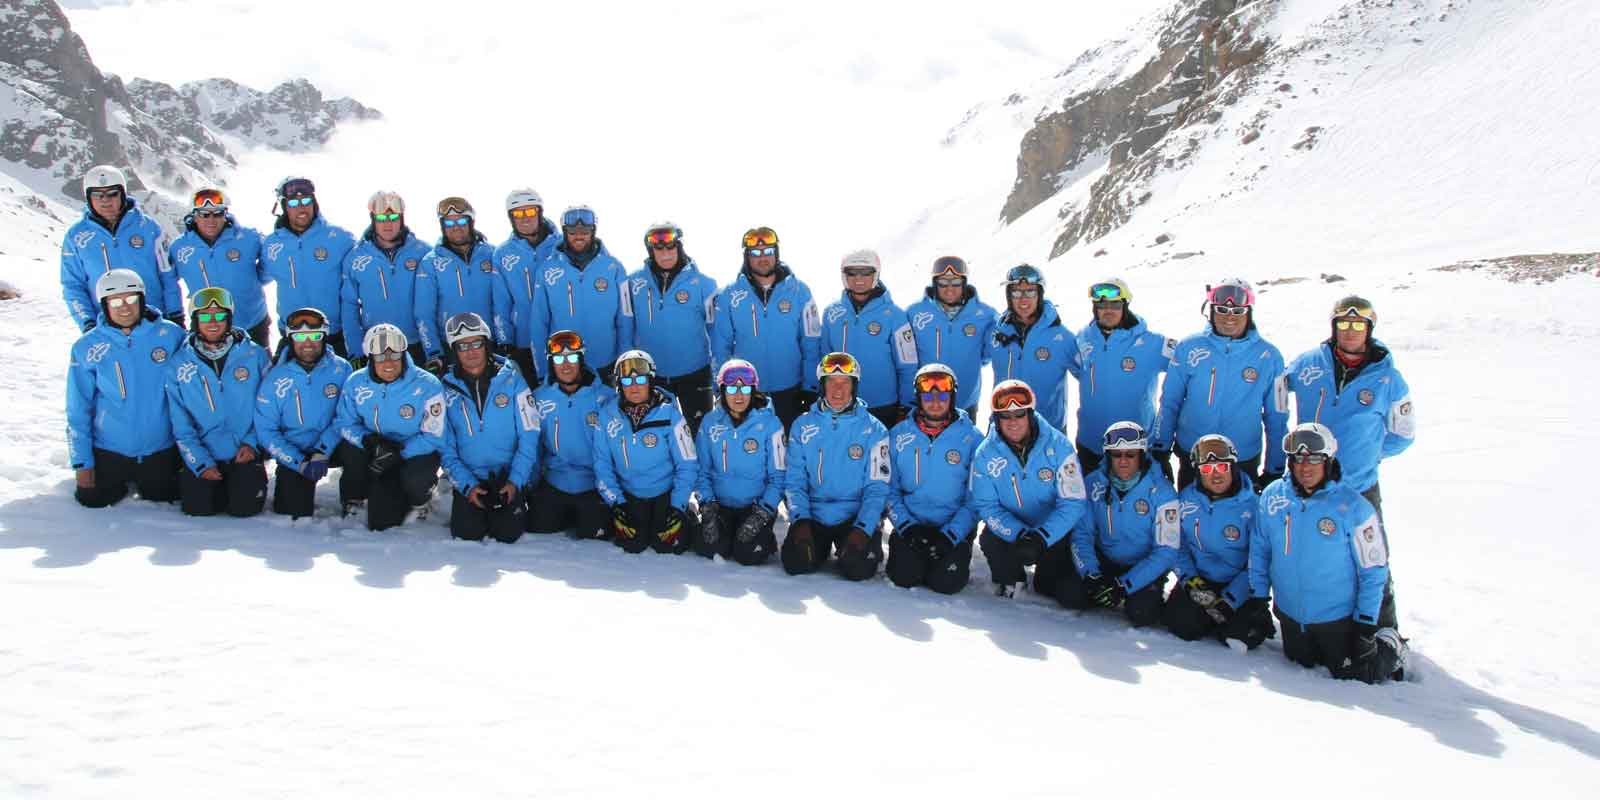 Scuola Italiana Sci e Snowboard Val di Pejo